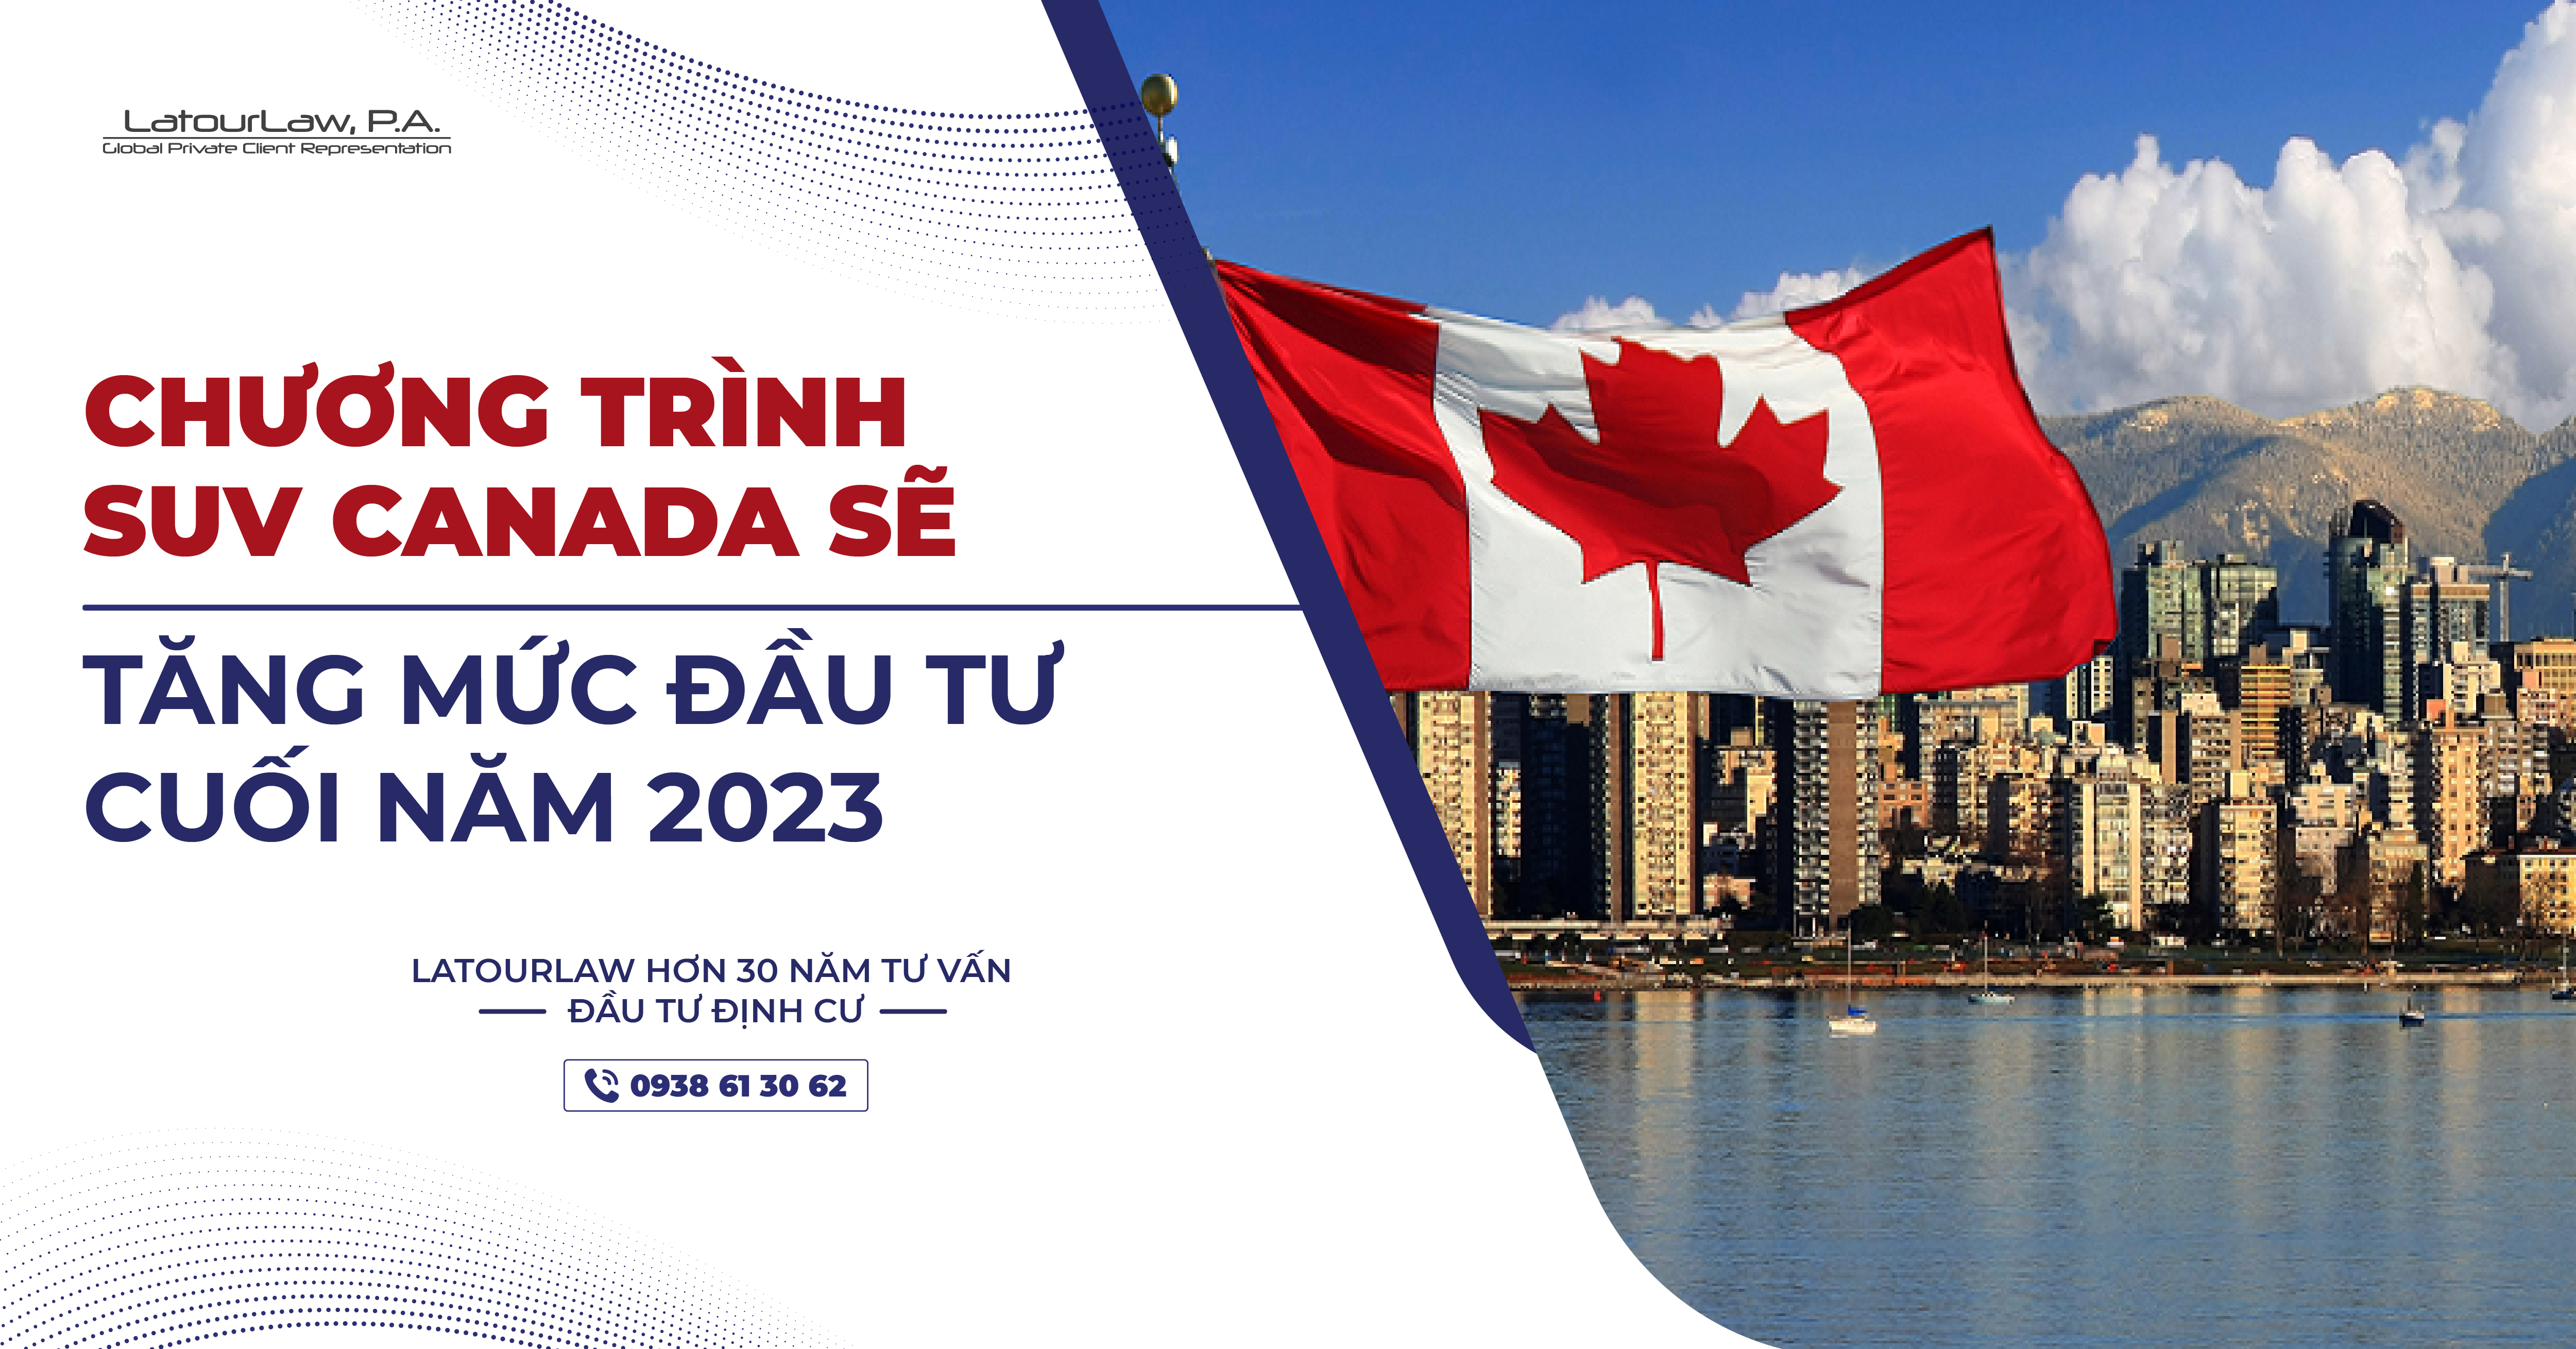 CHƯƠNG TRÌNH SUV CANADA SẼ TĂNG MỨC ĐẦU TƯ NĂM 2023